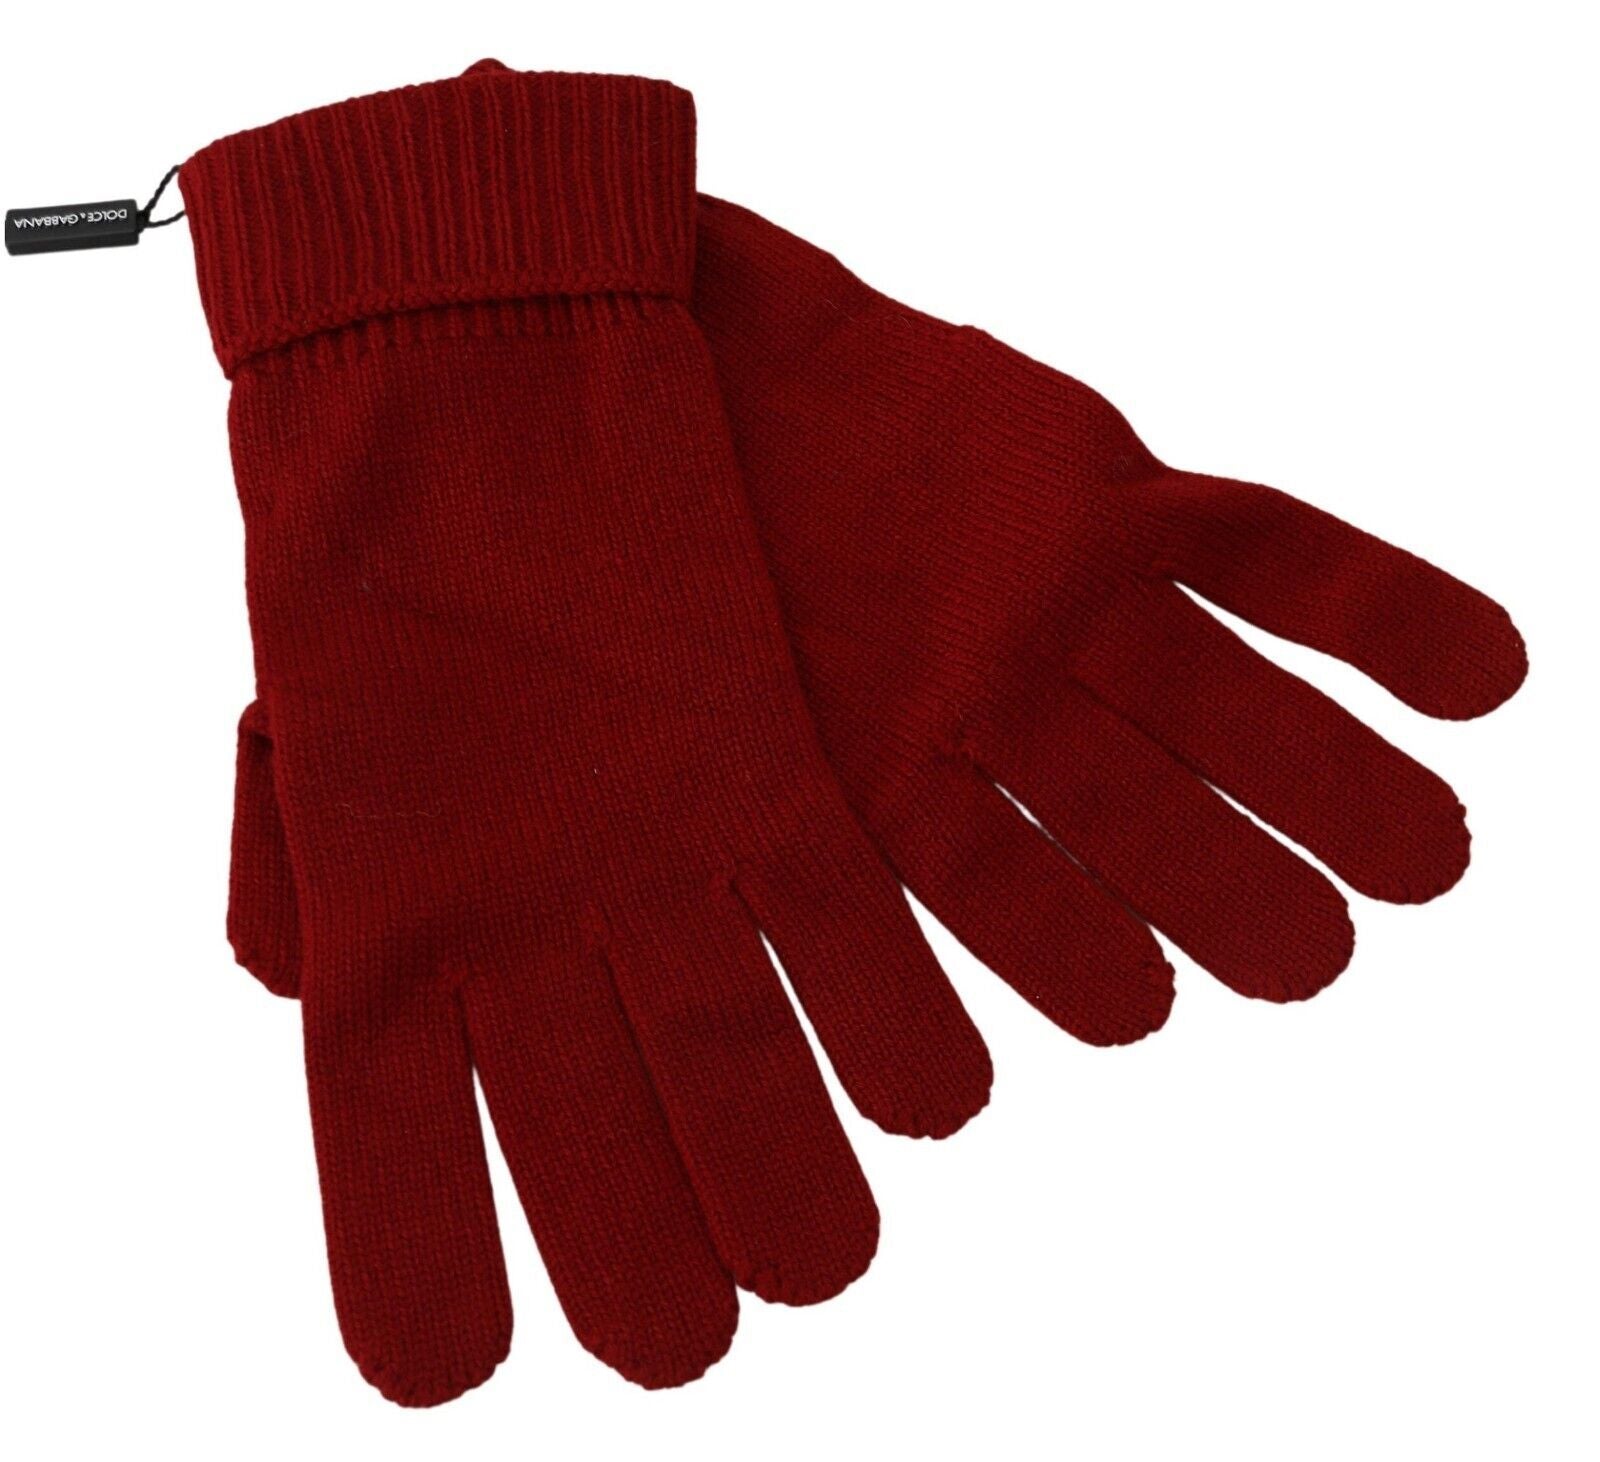 Dolce & Gabbana Elegant Red Cashmere Winter Gloves